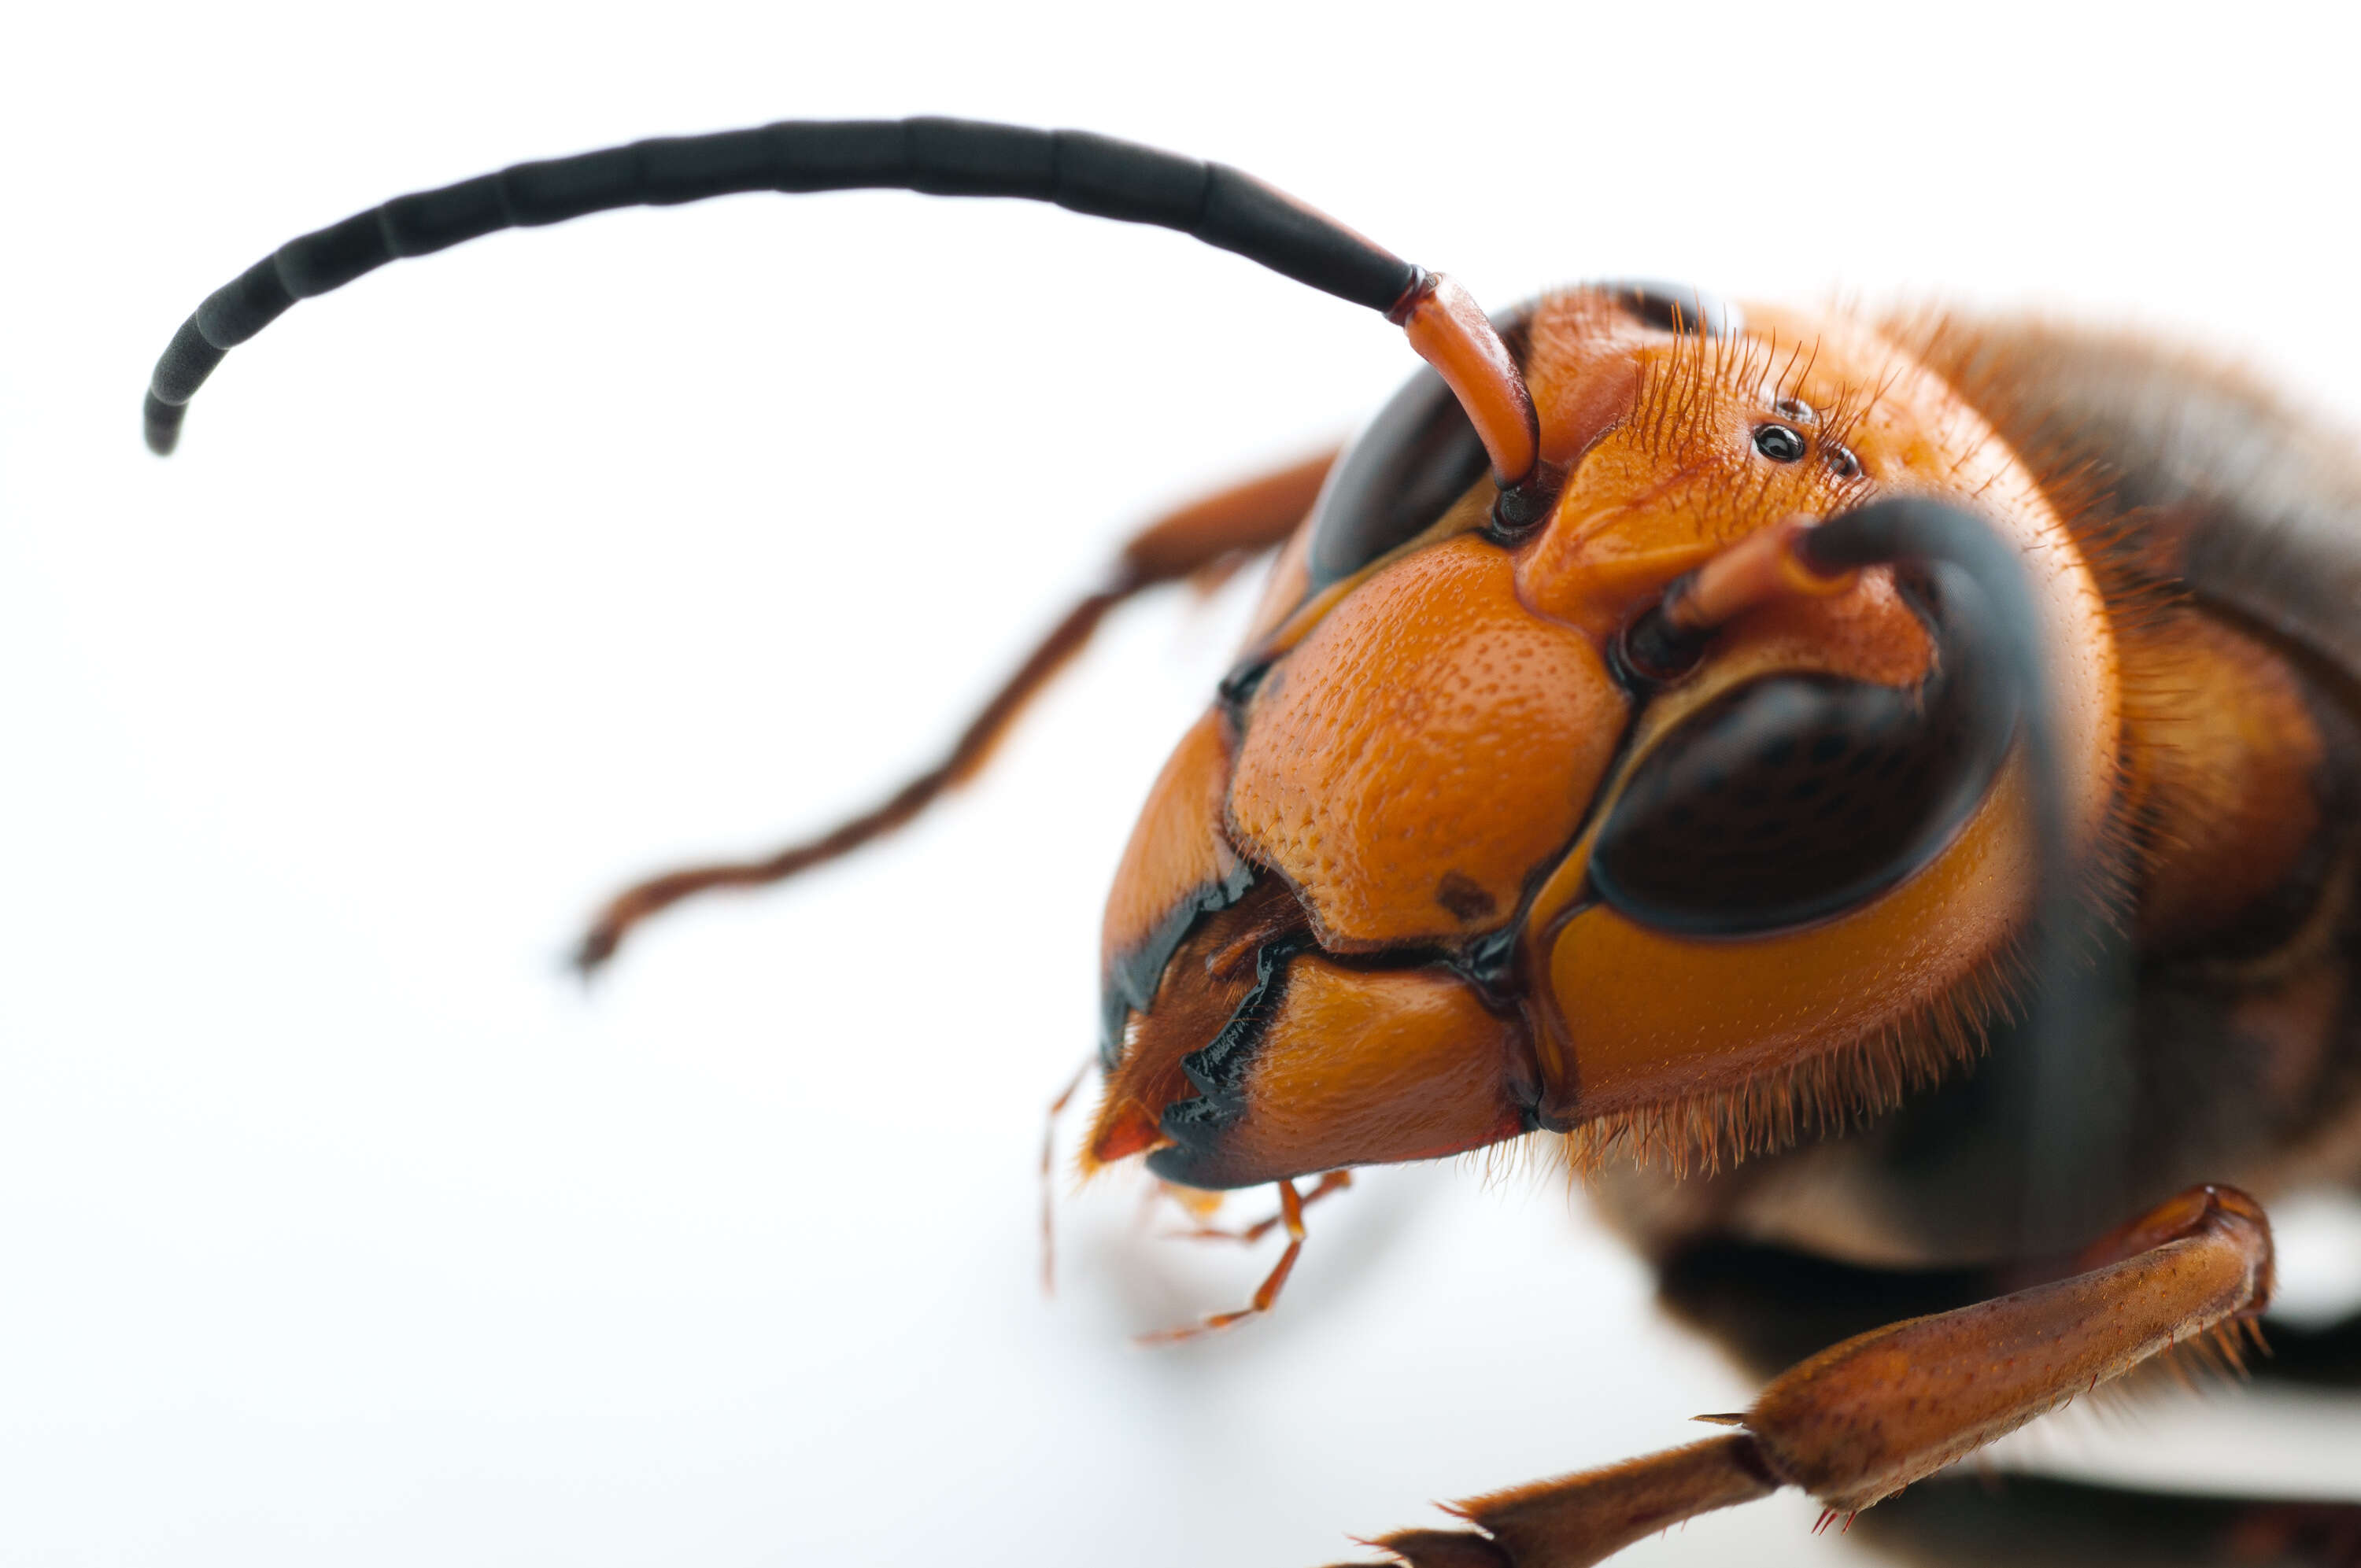 Image of Asian giant hornet